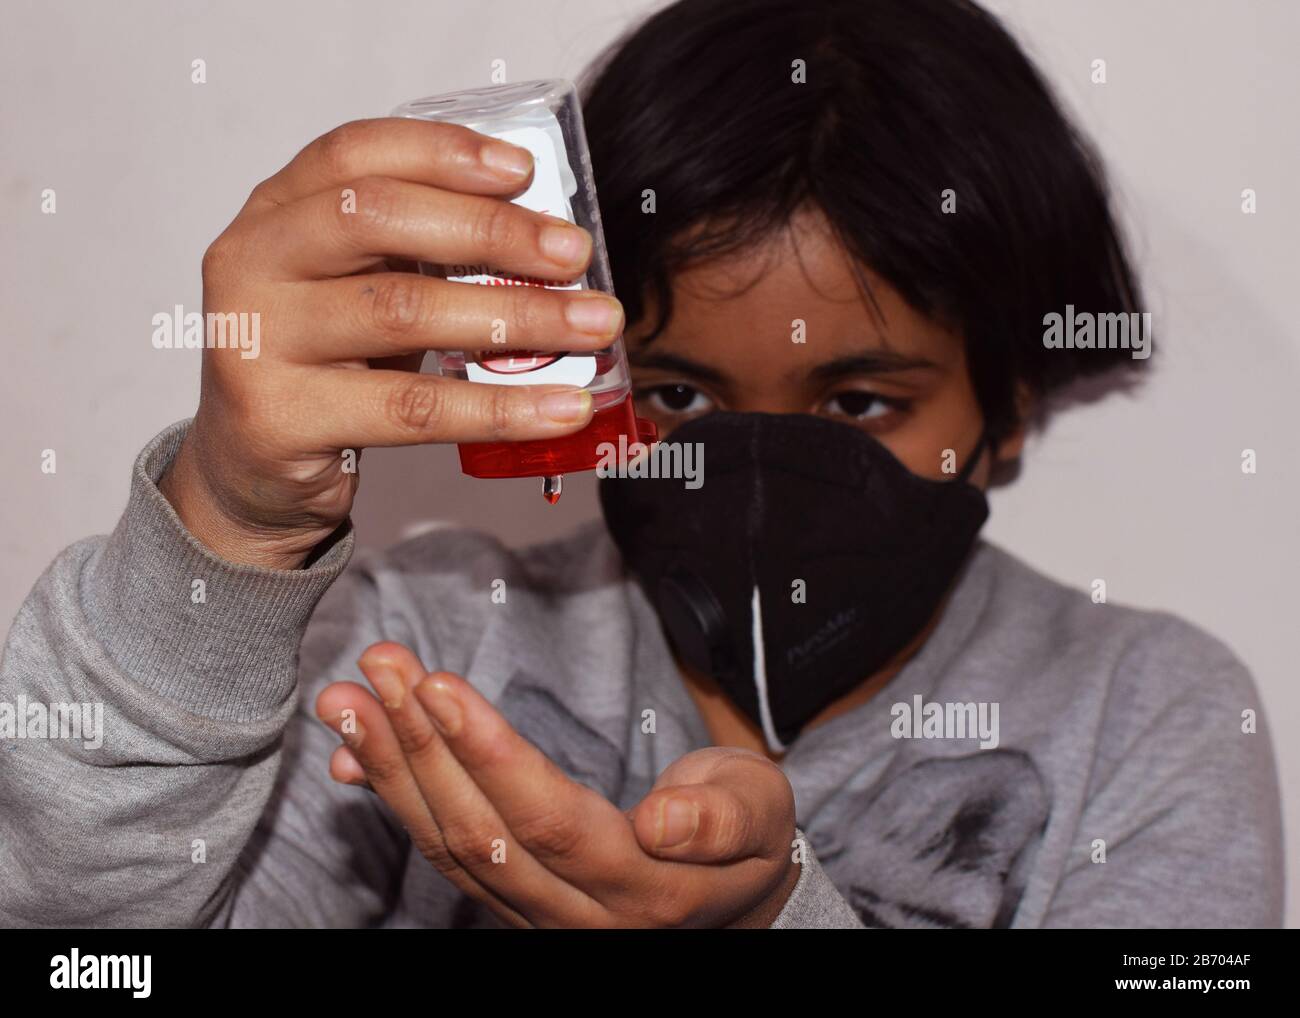 Un bambino indiano o un bambino che usa un disinfettante e indossa una maschera protettiva per la protezione contro l'epidemia di virus corona Foto Stock